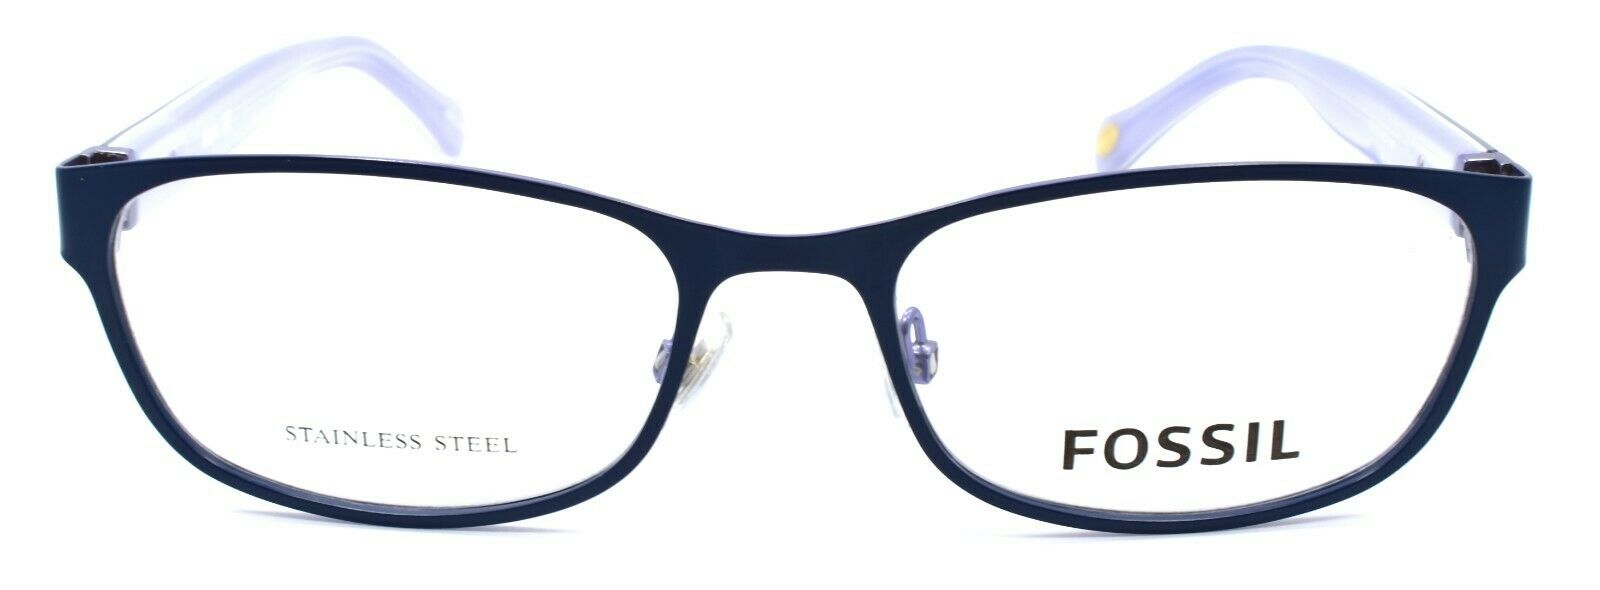 2-Fossil FOS 7023 RCT Women's Eyeglasses Frames 51-17-140 Matte Blue-716736029207-IKSpecs